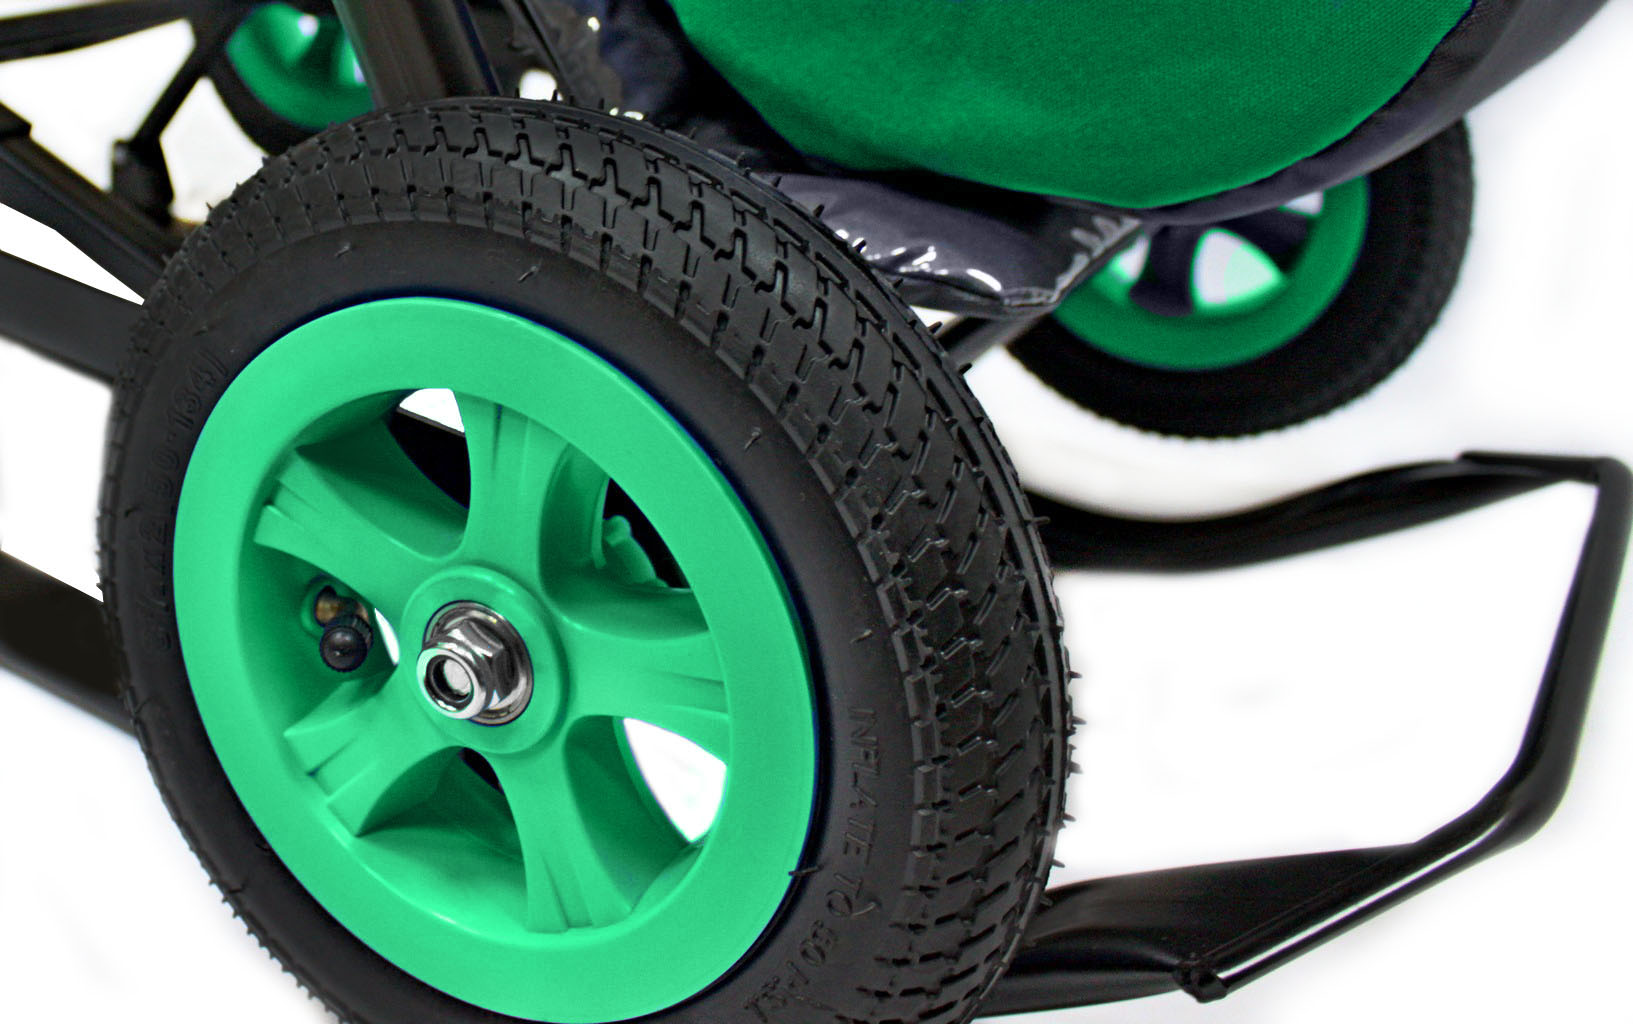 Санки-коляска Snow Galaxy - City-1-1 - Серый Зайка, цвет зеленый на больших надувных колесах, сумка, варежки  